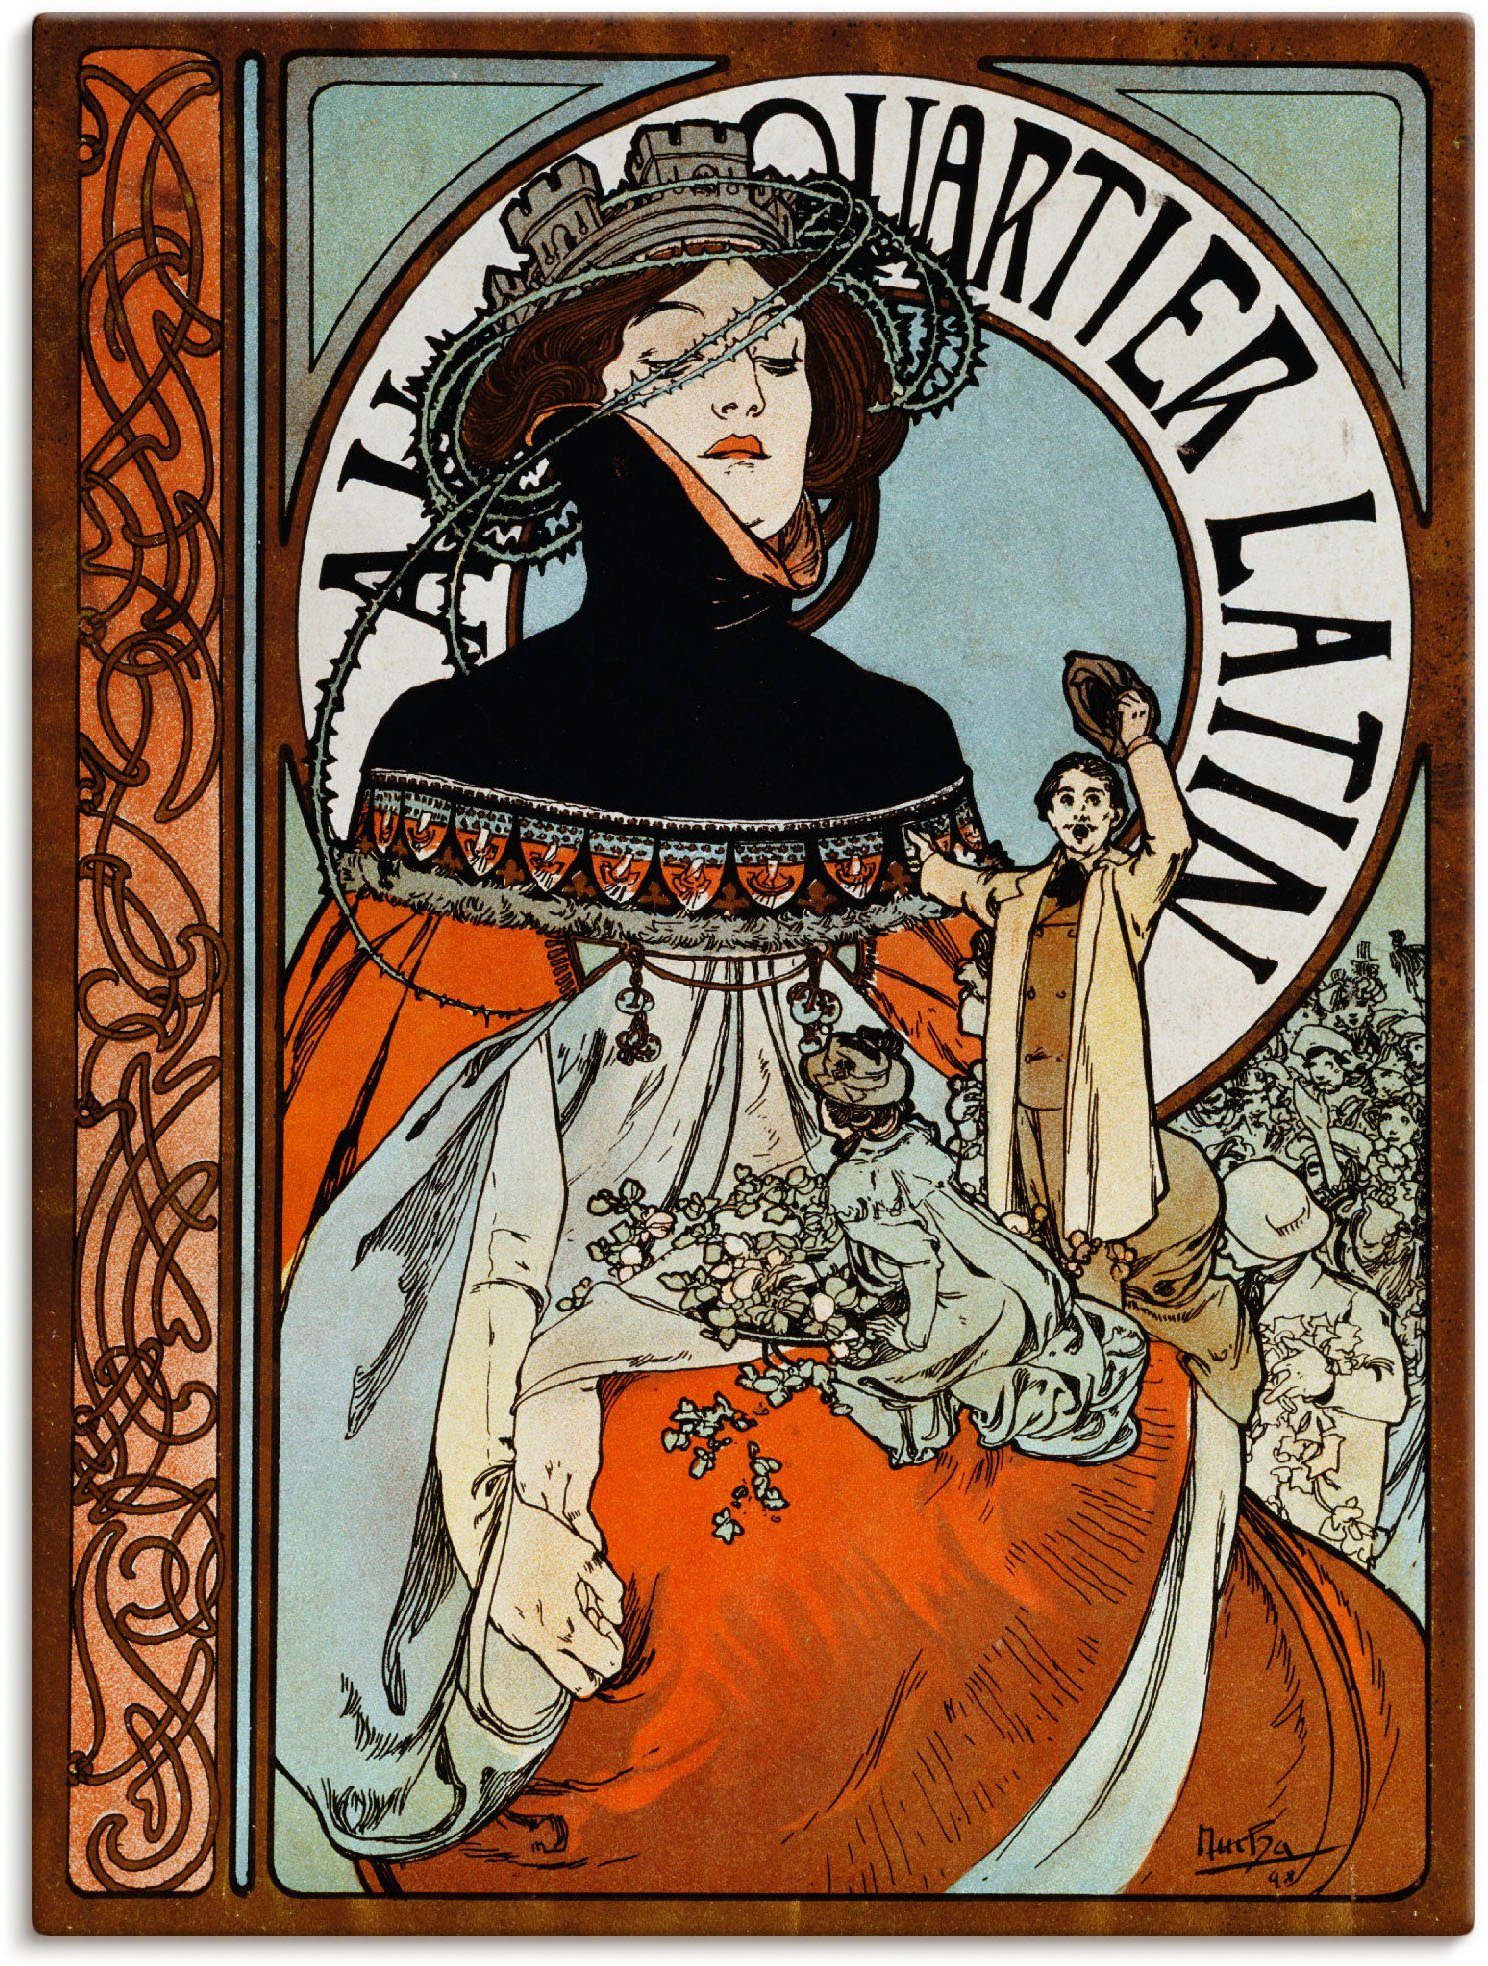 Artland Artprint Au Quartier Latin. 1898 in vele afmetingen & productsoorten -artprint op linnen, poster, muursticker / wandfolie ook geschikt voor de badkamer (1 stuk)